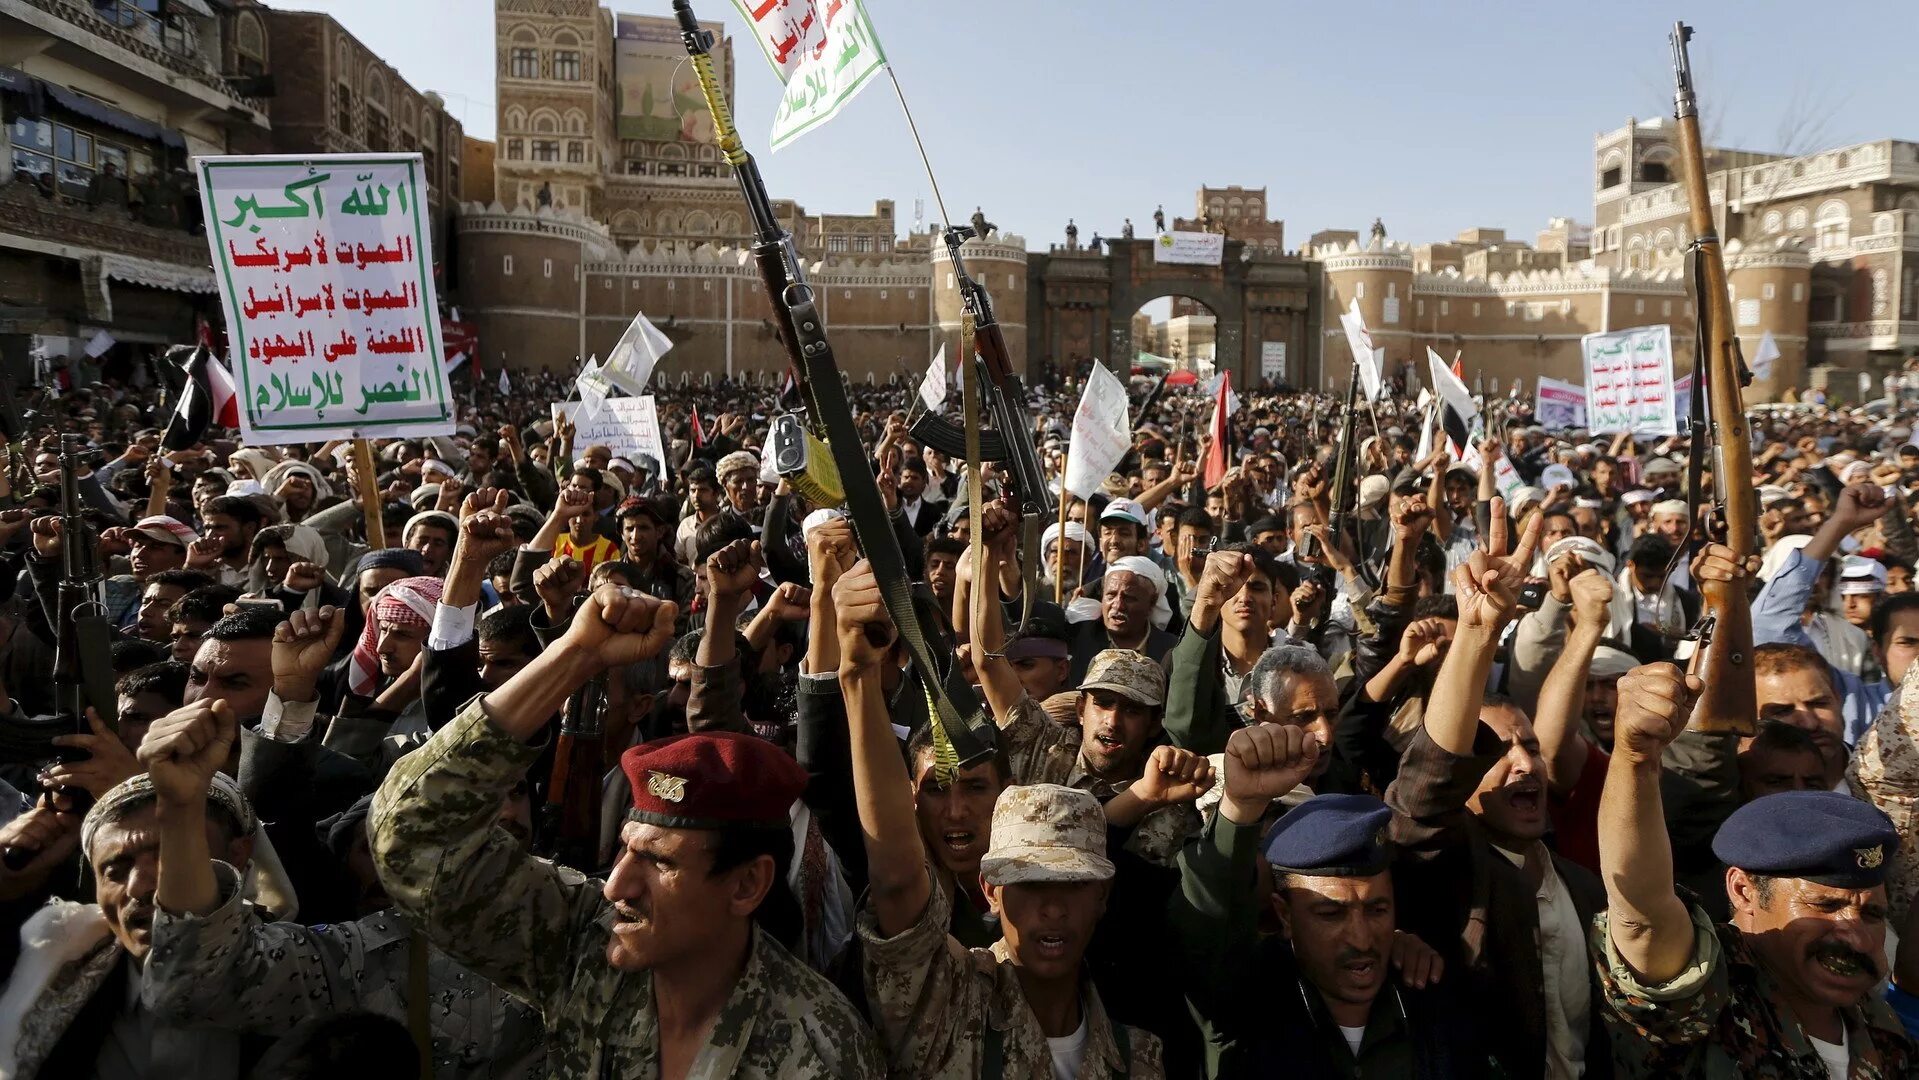 Йемен хуситы. Повстанцы Йемен. Йеменские повстанцы-хуситы. Лидер хуситов в Йемене. Кто такие хуситы и где живут